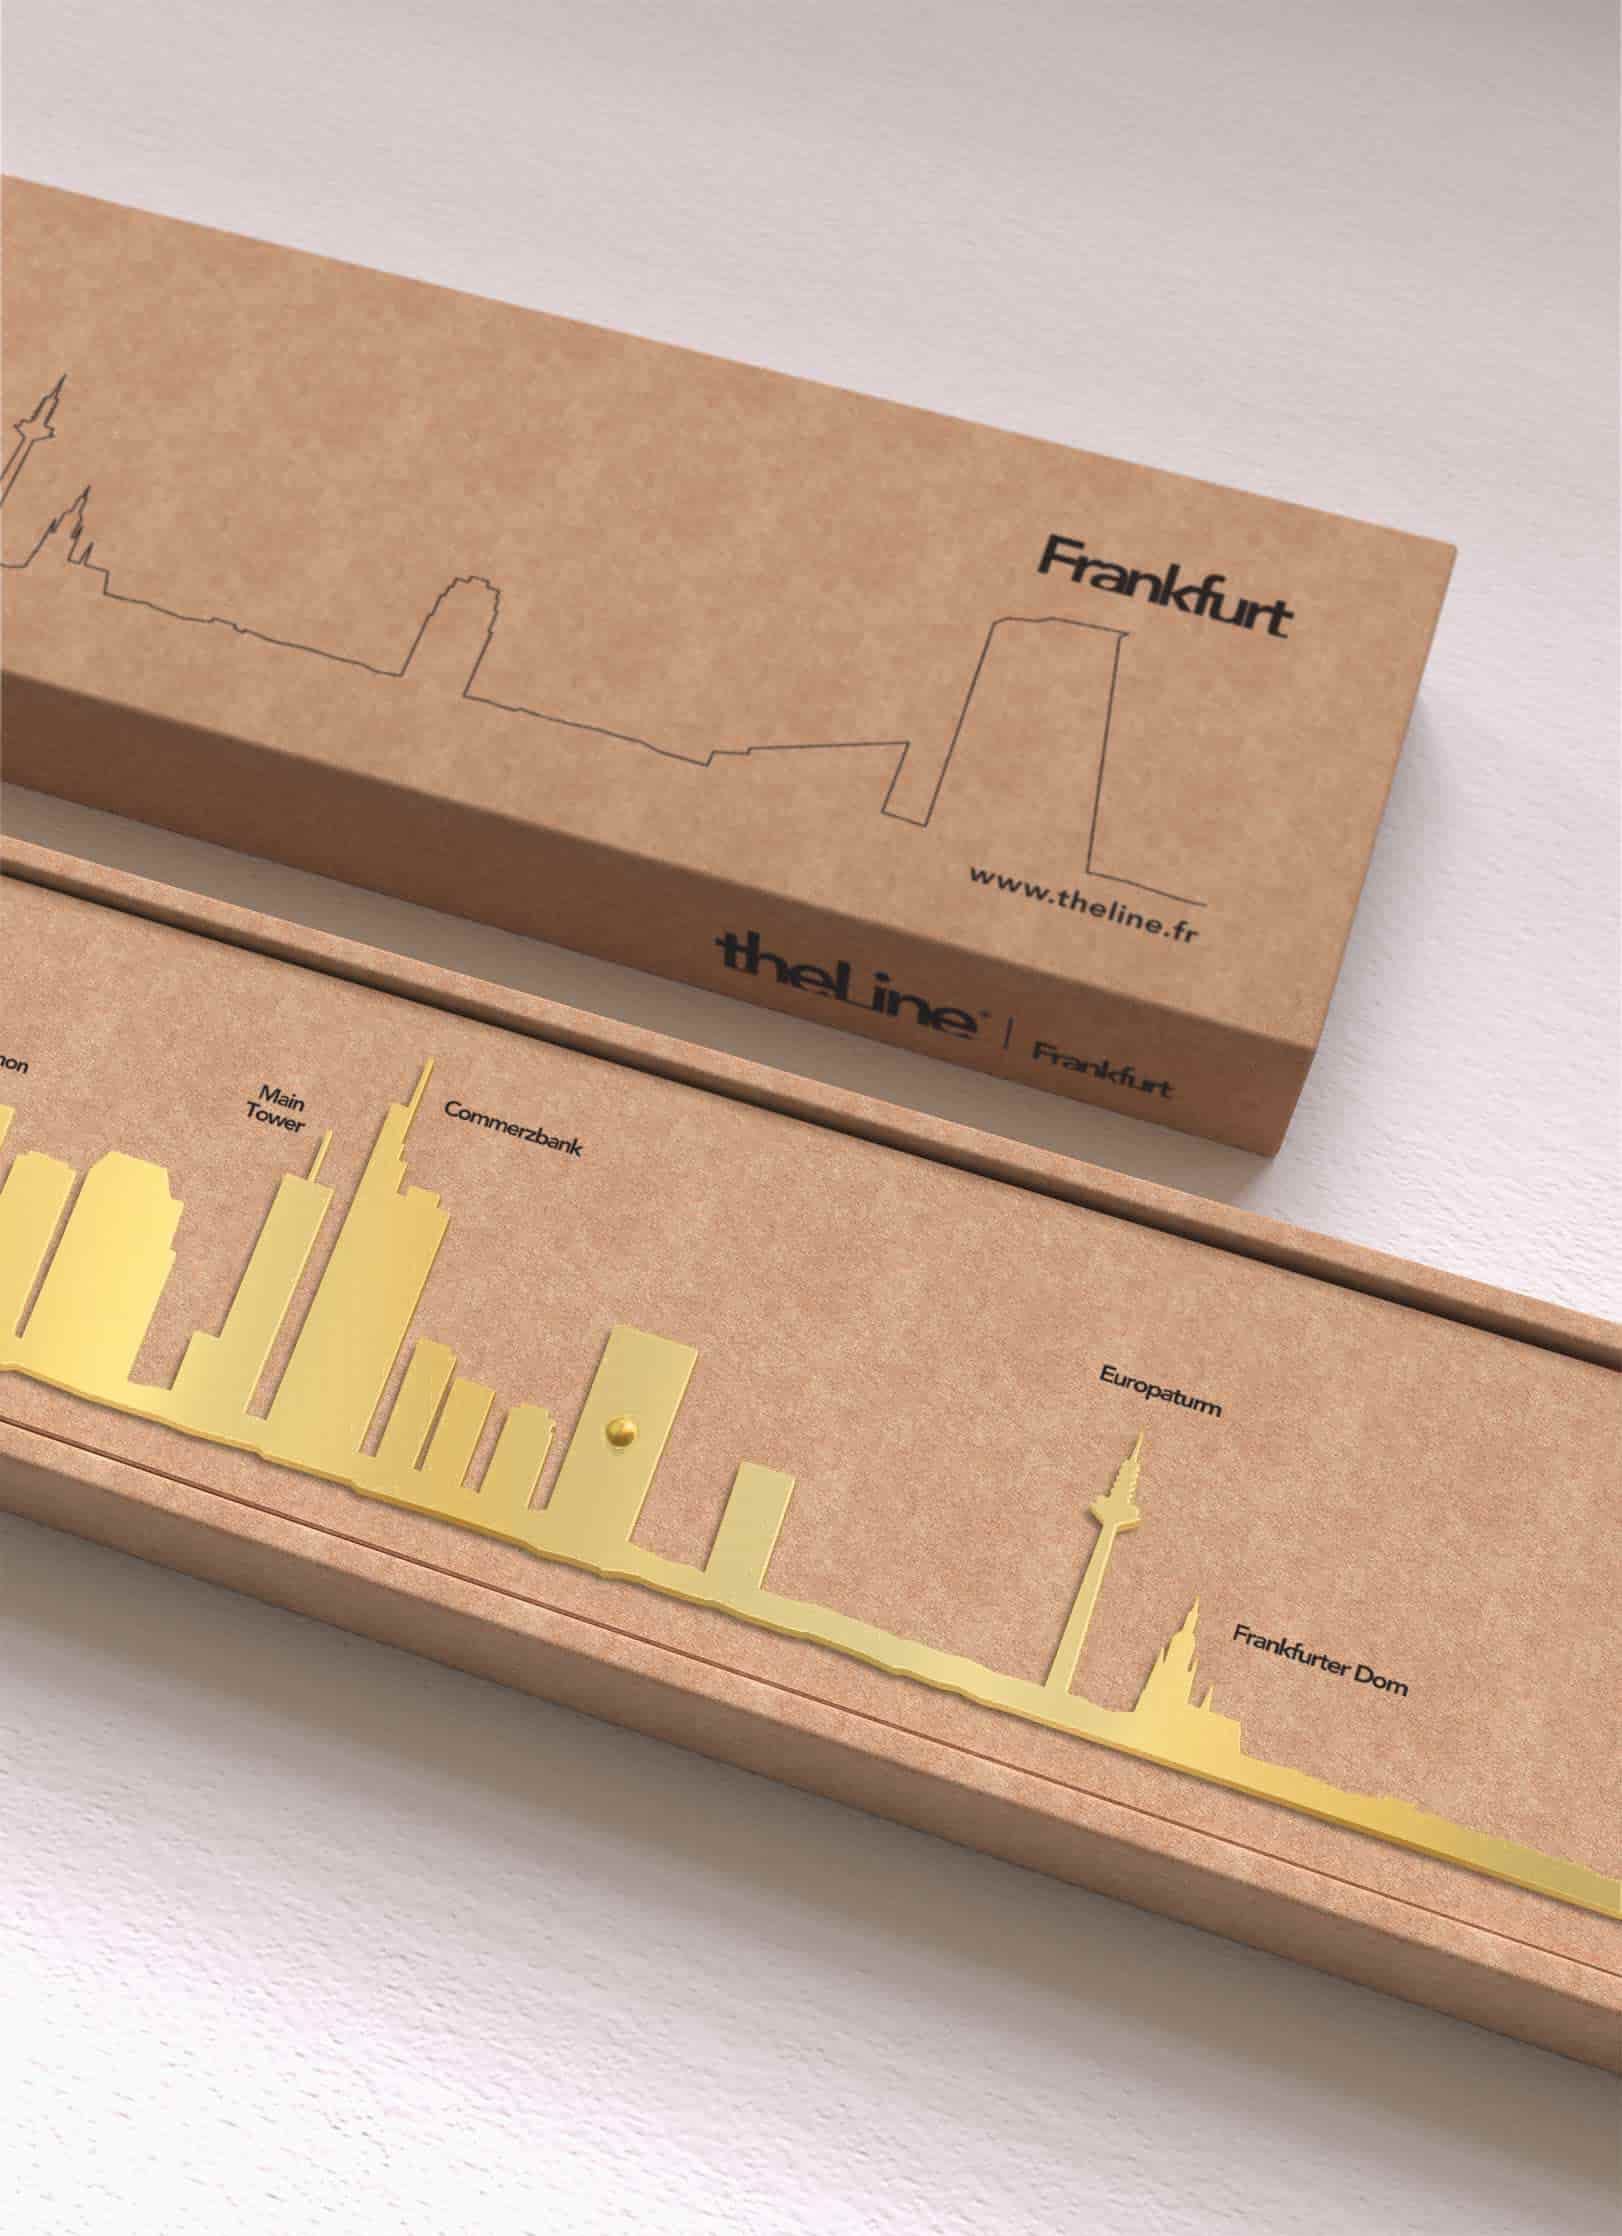 Packaging de la déco murale de Frankfurt doré